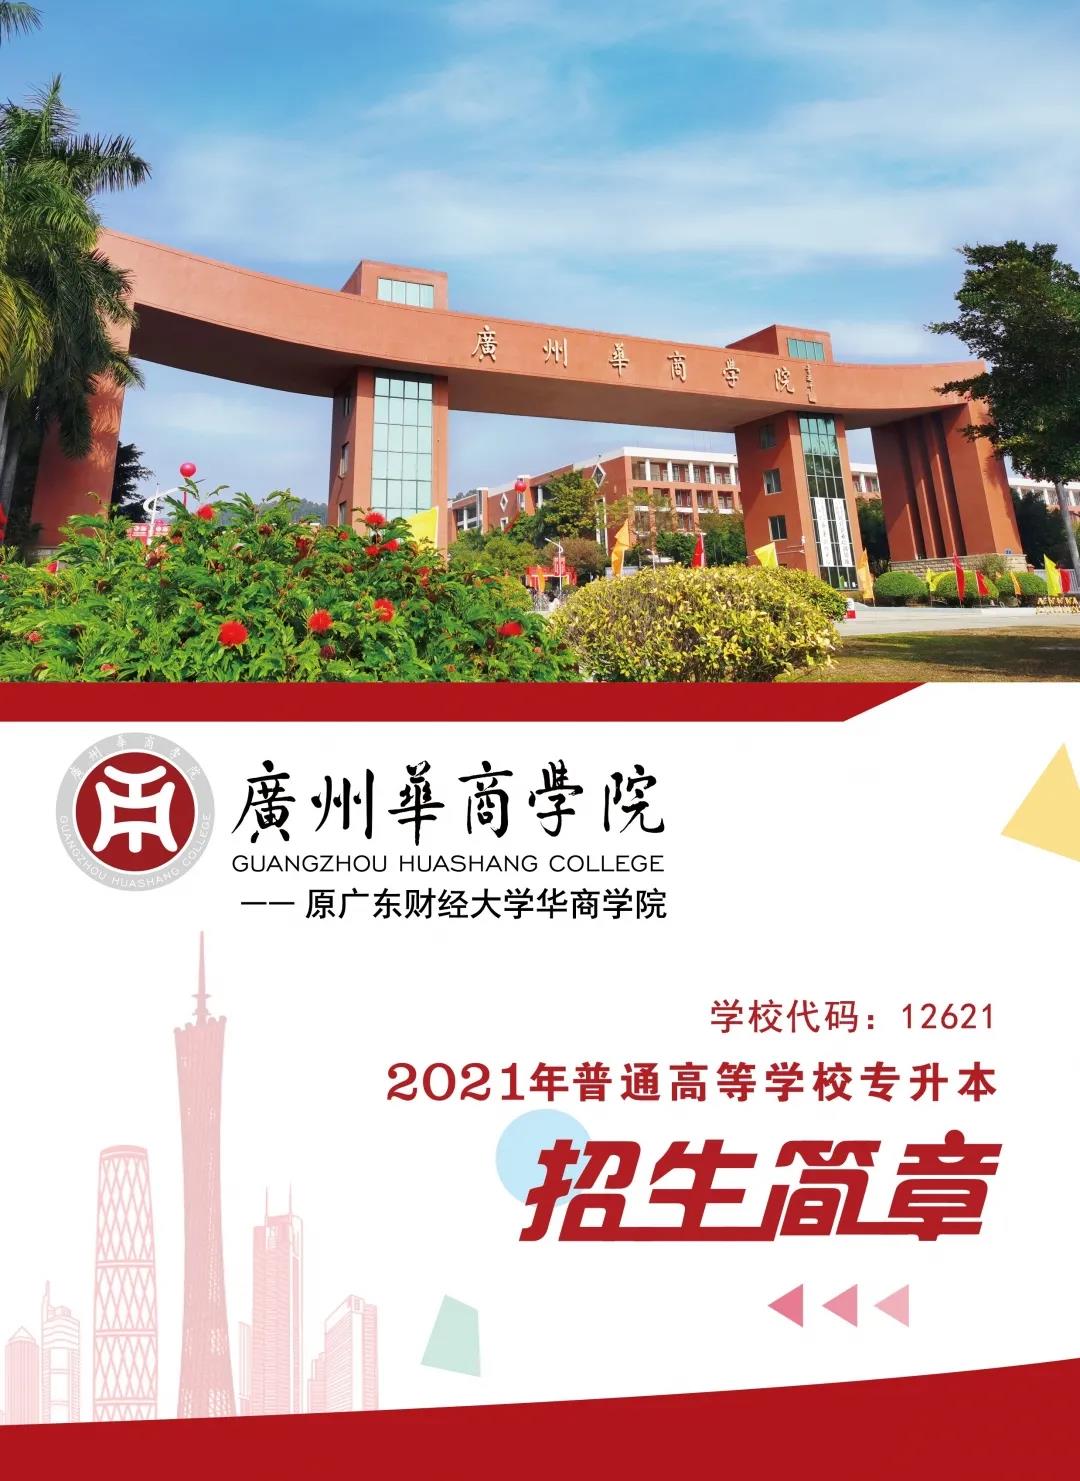 欢迎报考 | 《广州华商学院》2021年普通专升本招生简章正式公布！